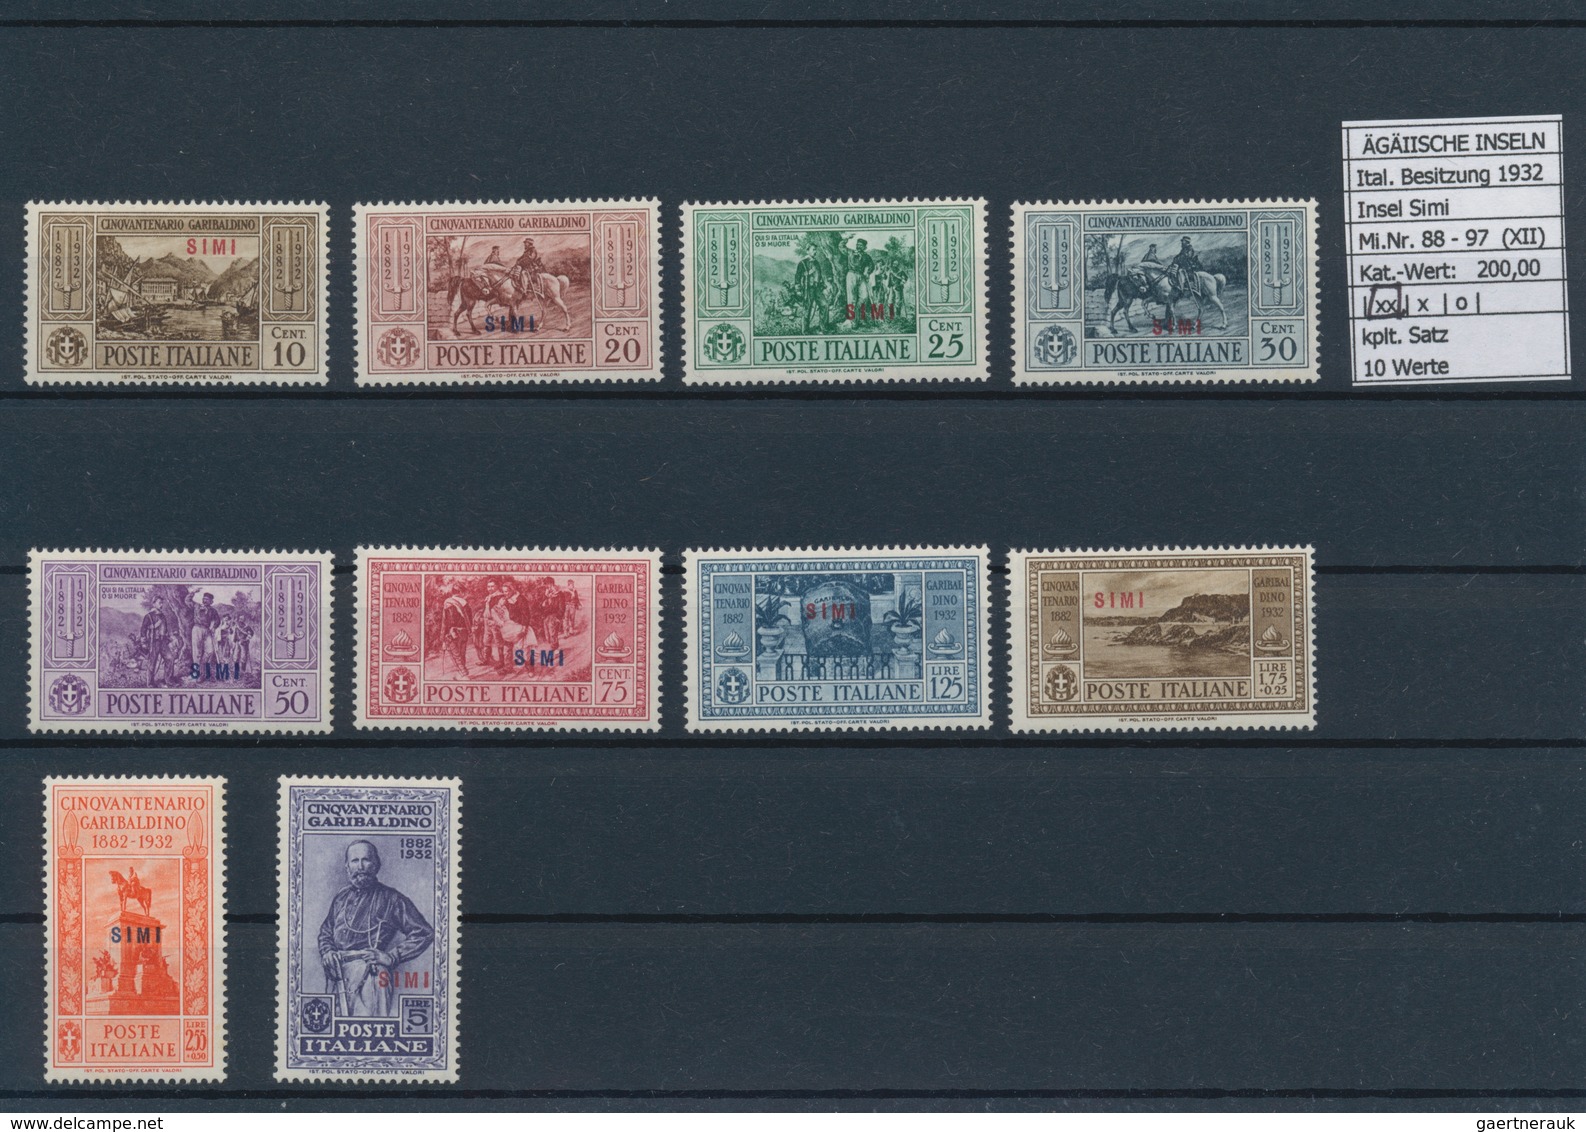 Ägäische Inseln: 1932, 10 c.-5 l. Guiseppel Garibaldi, 13 complete sets with overprint Calino till S